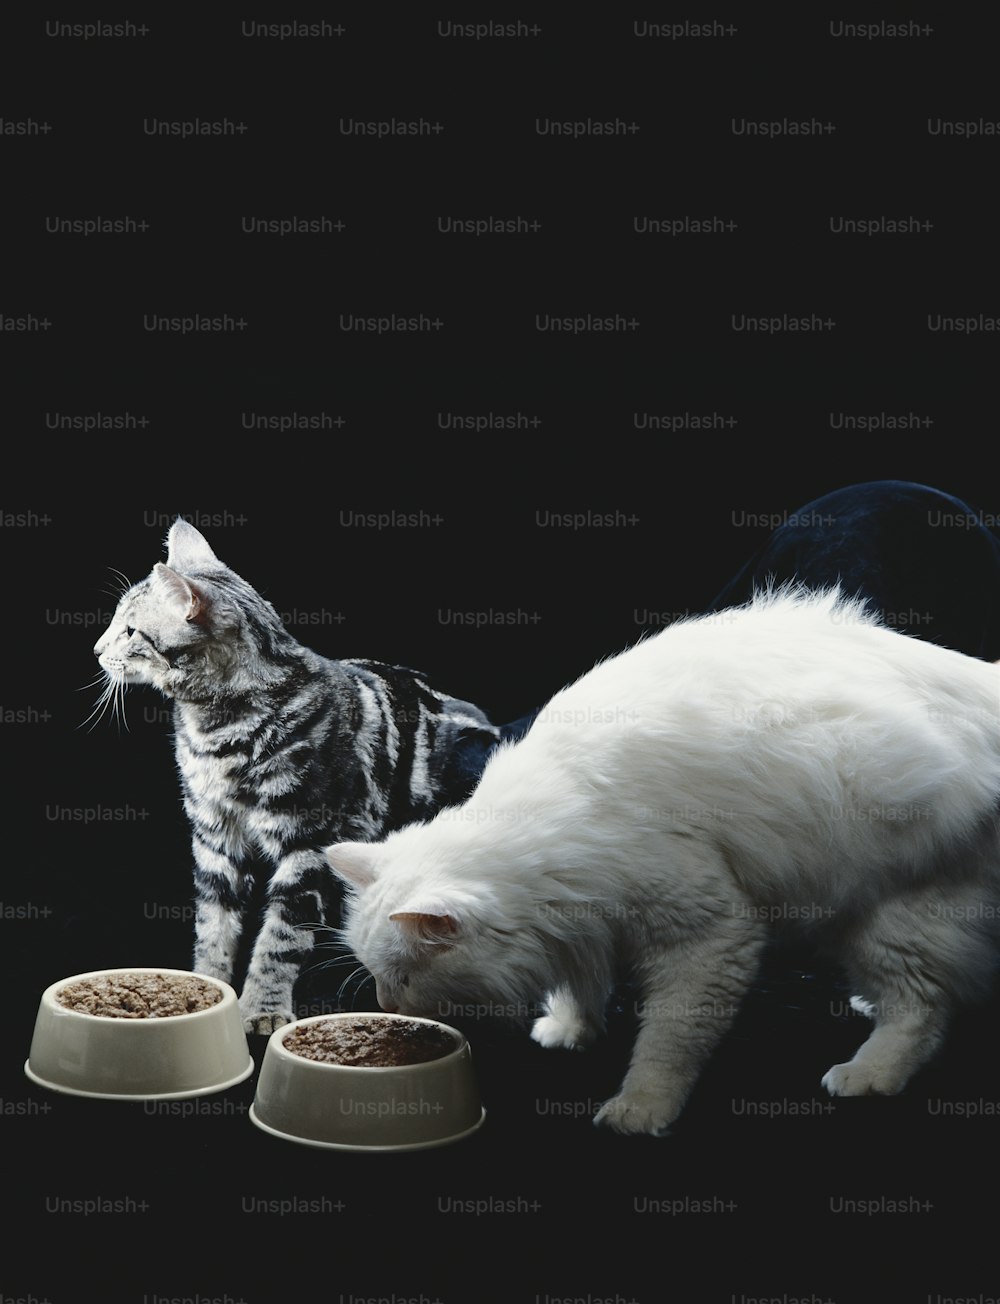 Un gatto che mangia da una ciotola accanto a un altro gatto